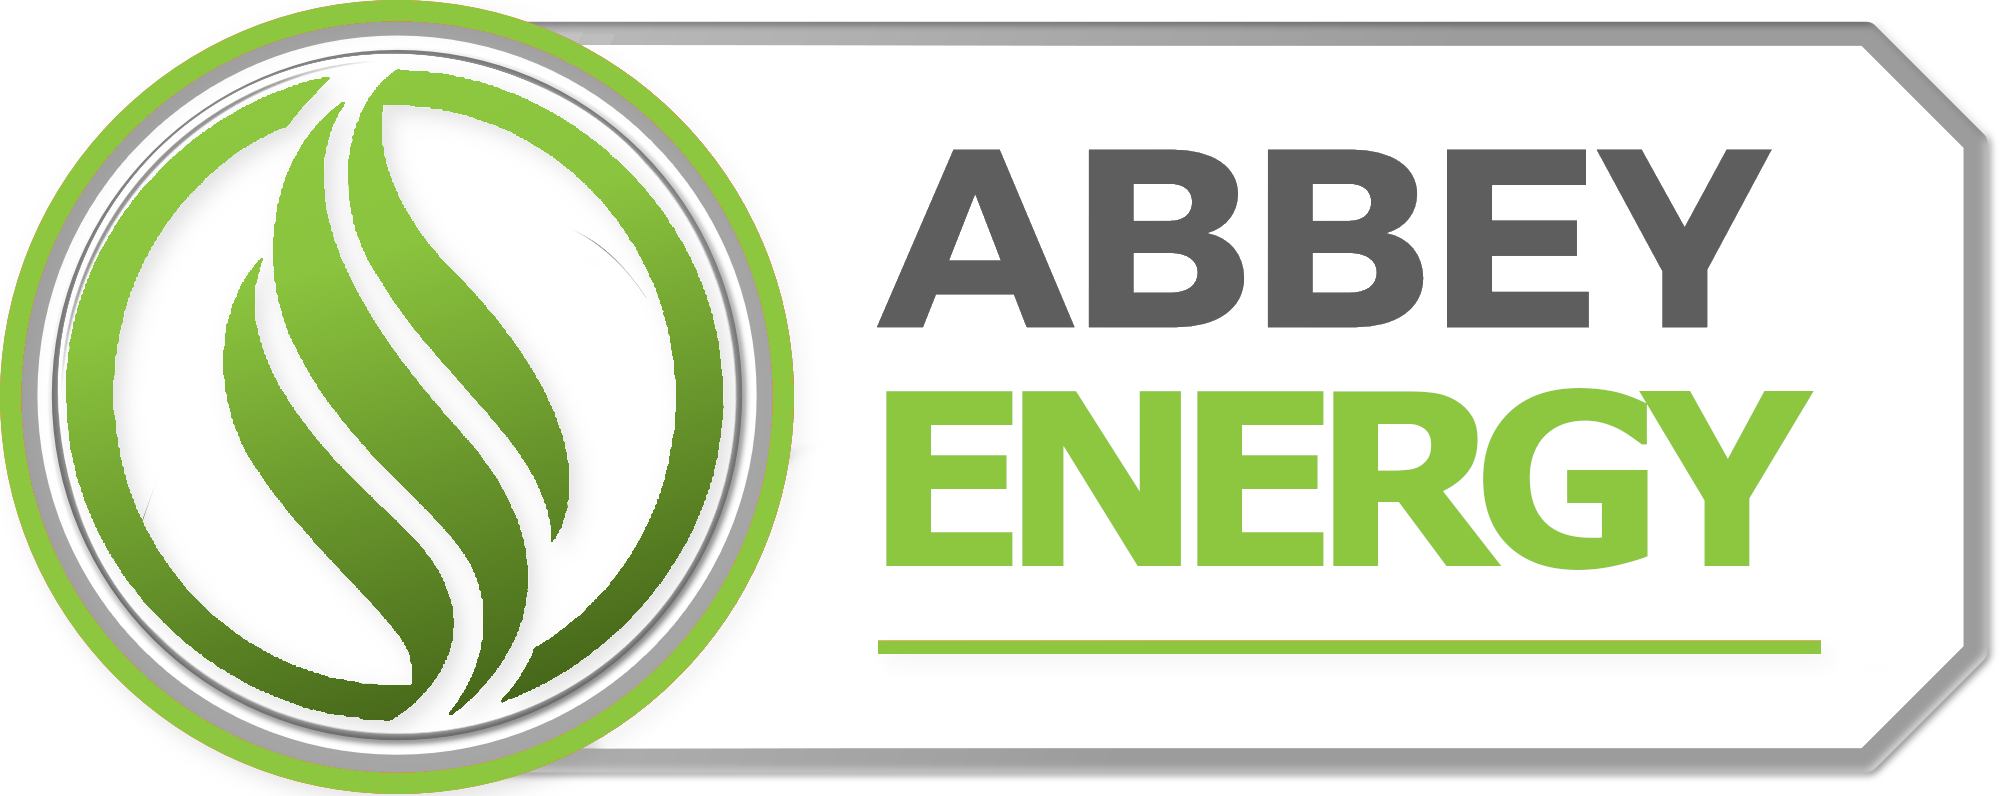 Abbey Energy